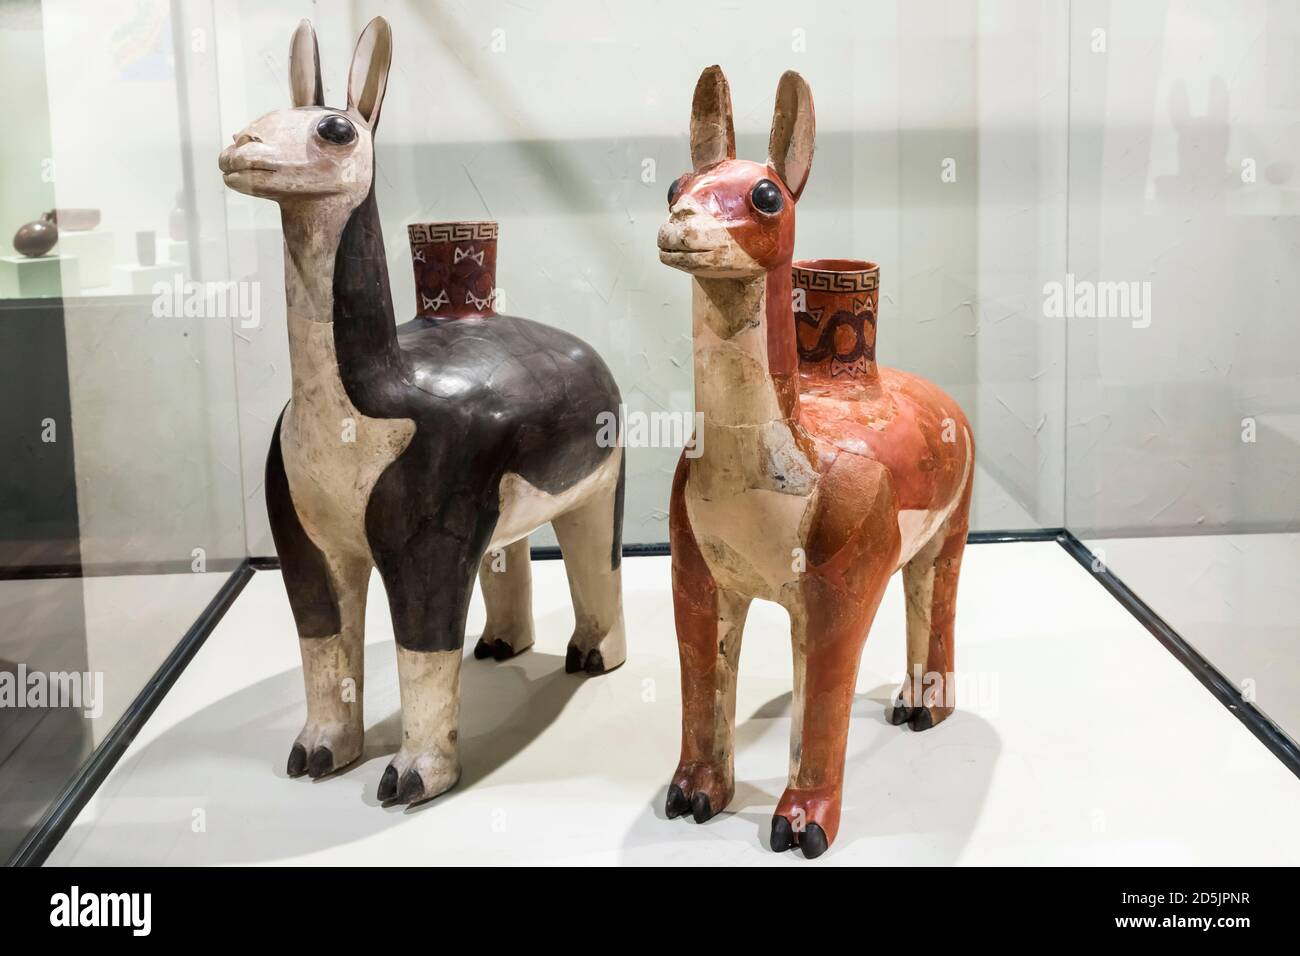 Gefäß mit Lamaform, Galerie der Huari-Sammlung, 'Nationalmuseum für Archäologie, Anthropologie und Geschichte Perus', Lima, Peru, Südamerika Stockfoto